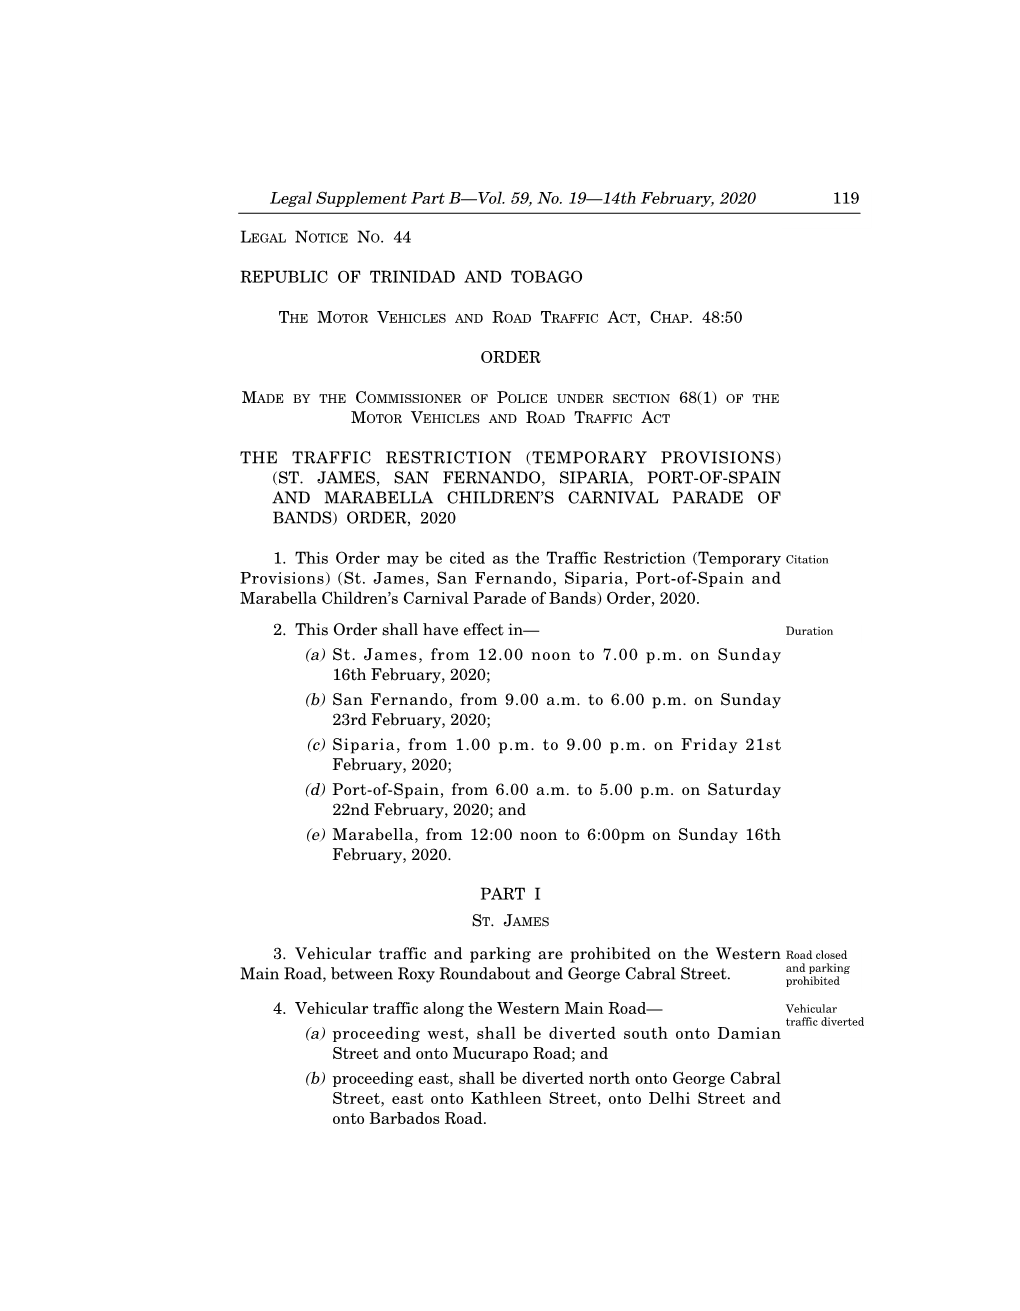 Legal Notice No. 44, Vol. 59, No. 19, 14Th February, 2020